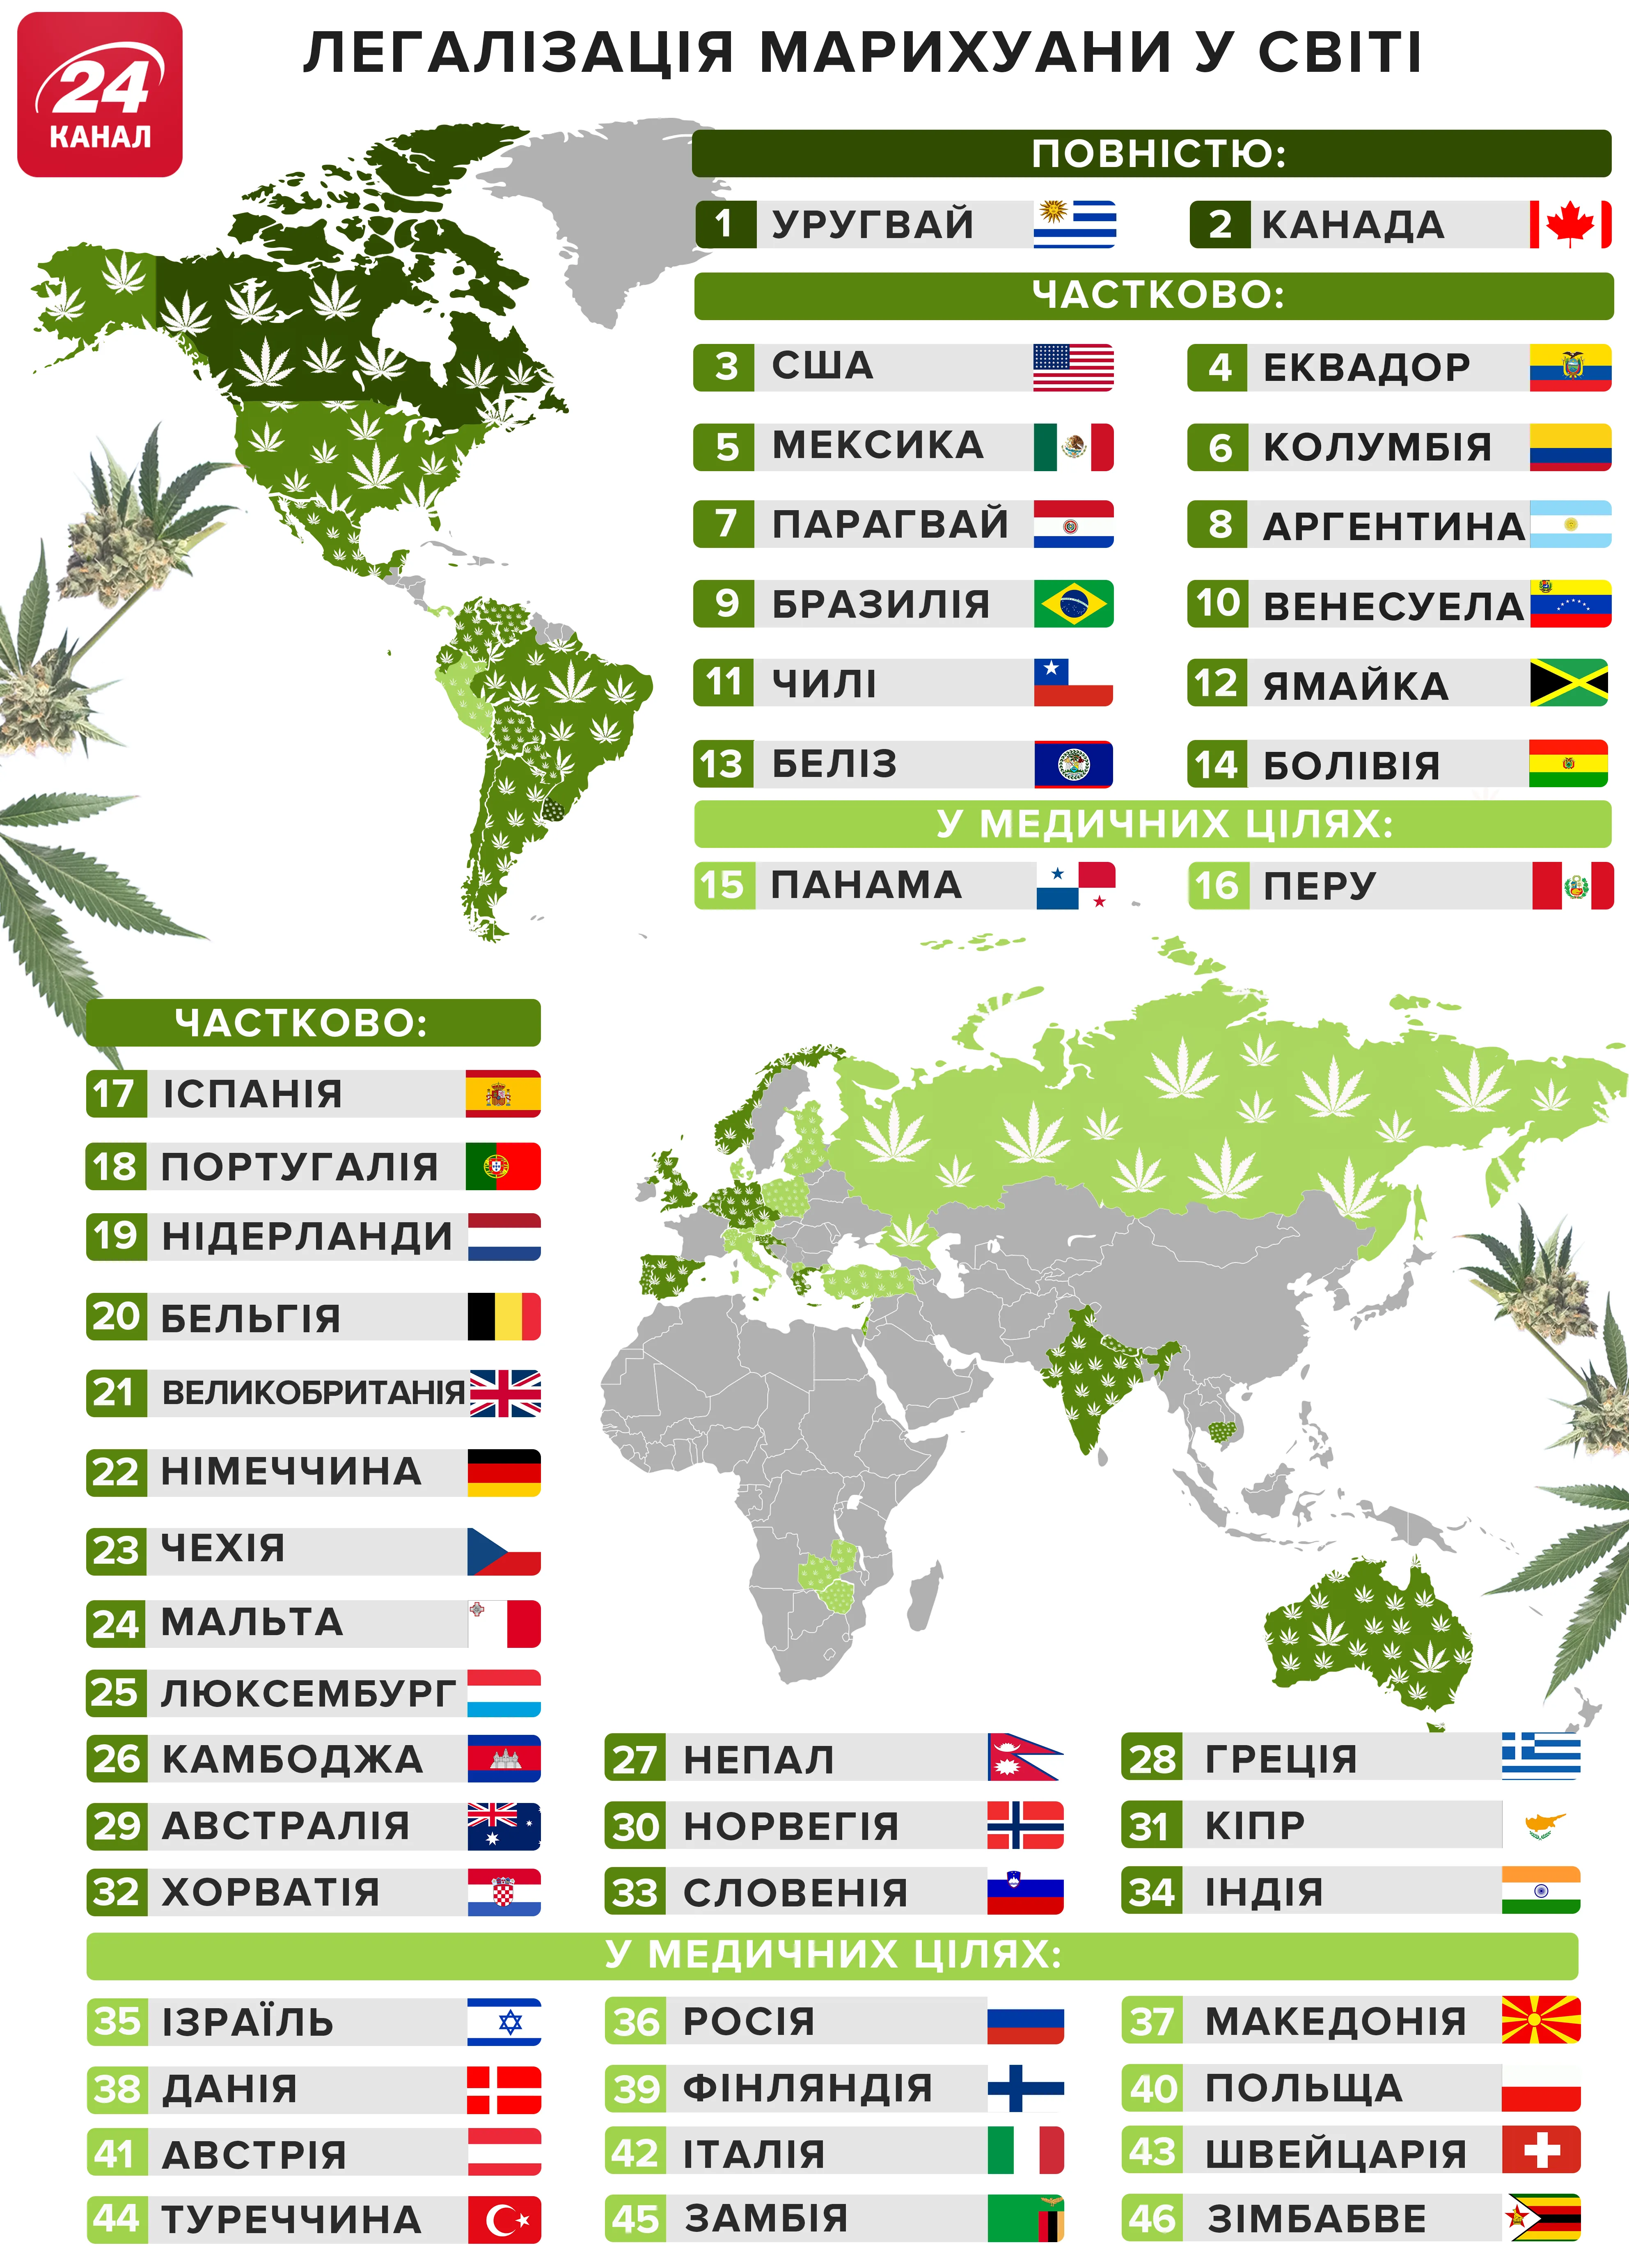 Де легалізована марихуана